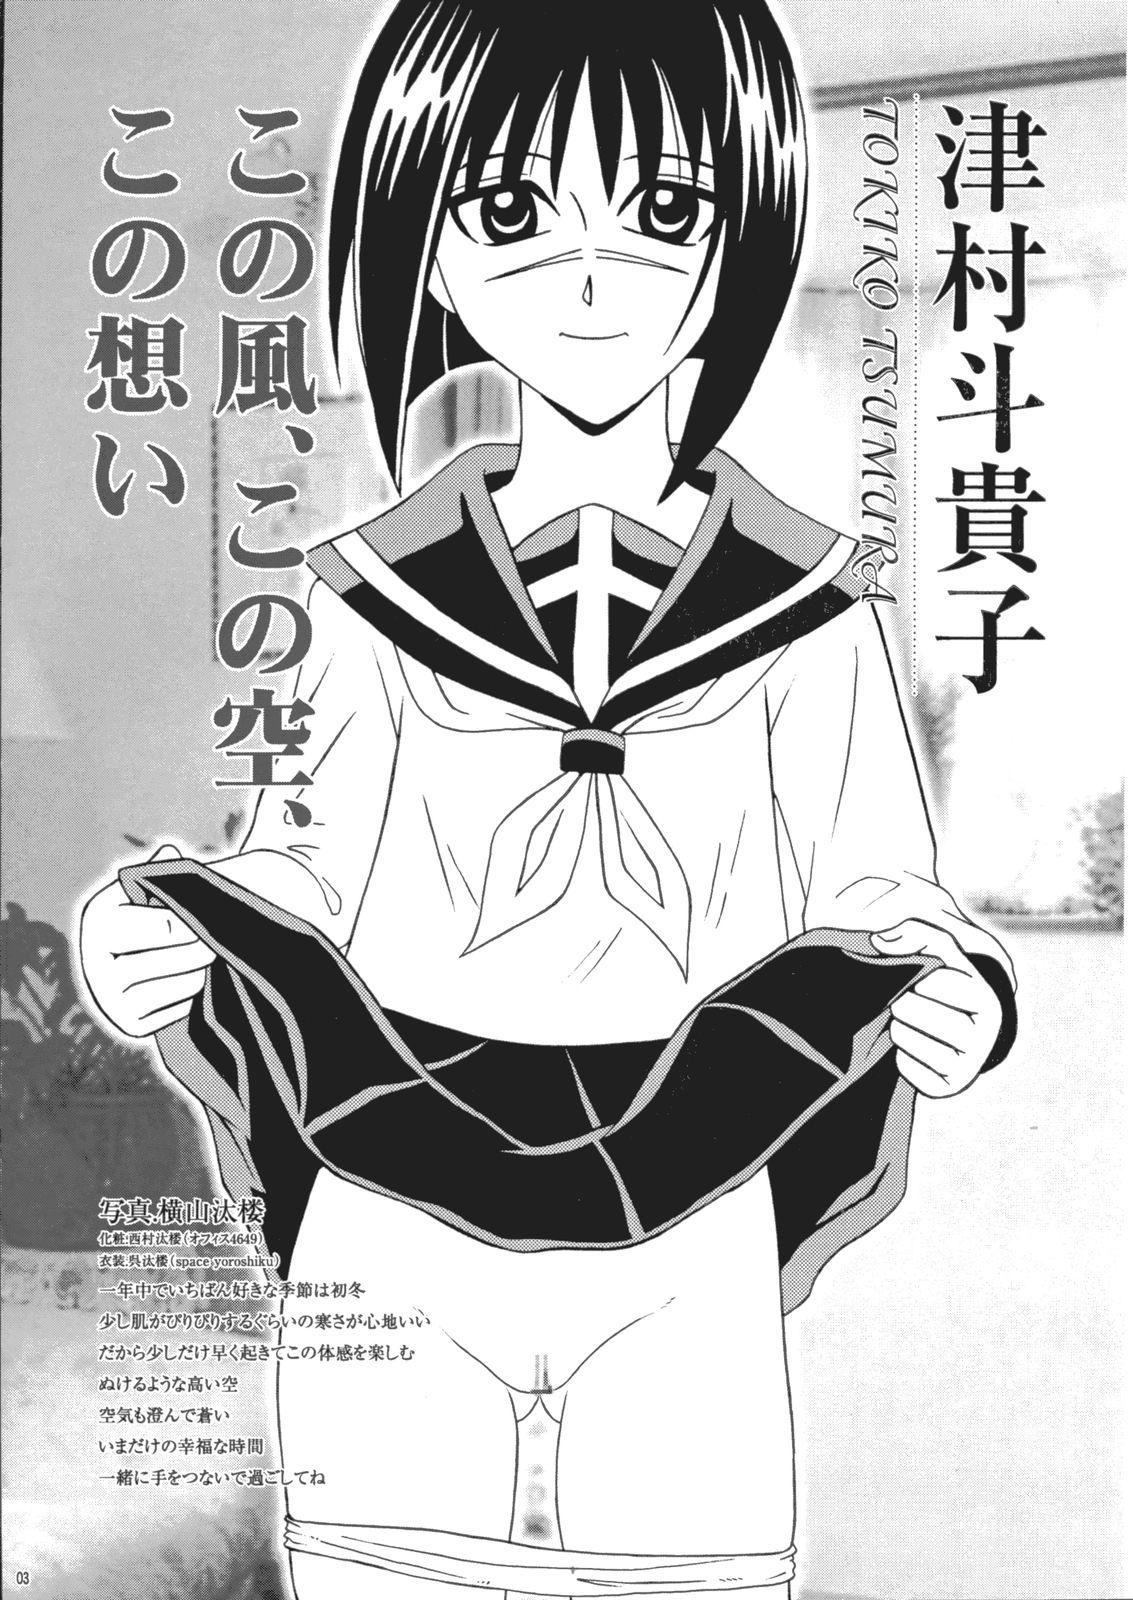 Couple Fucking Saku-chan Kurabu Vol.03 - Naruto One piece Ichigo 100 Is Hikaru no go Swallowing - Page 2